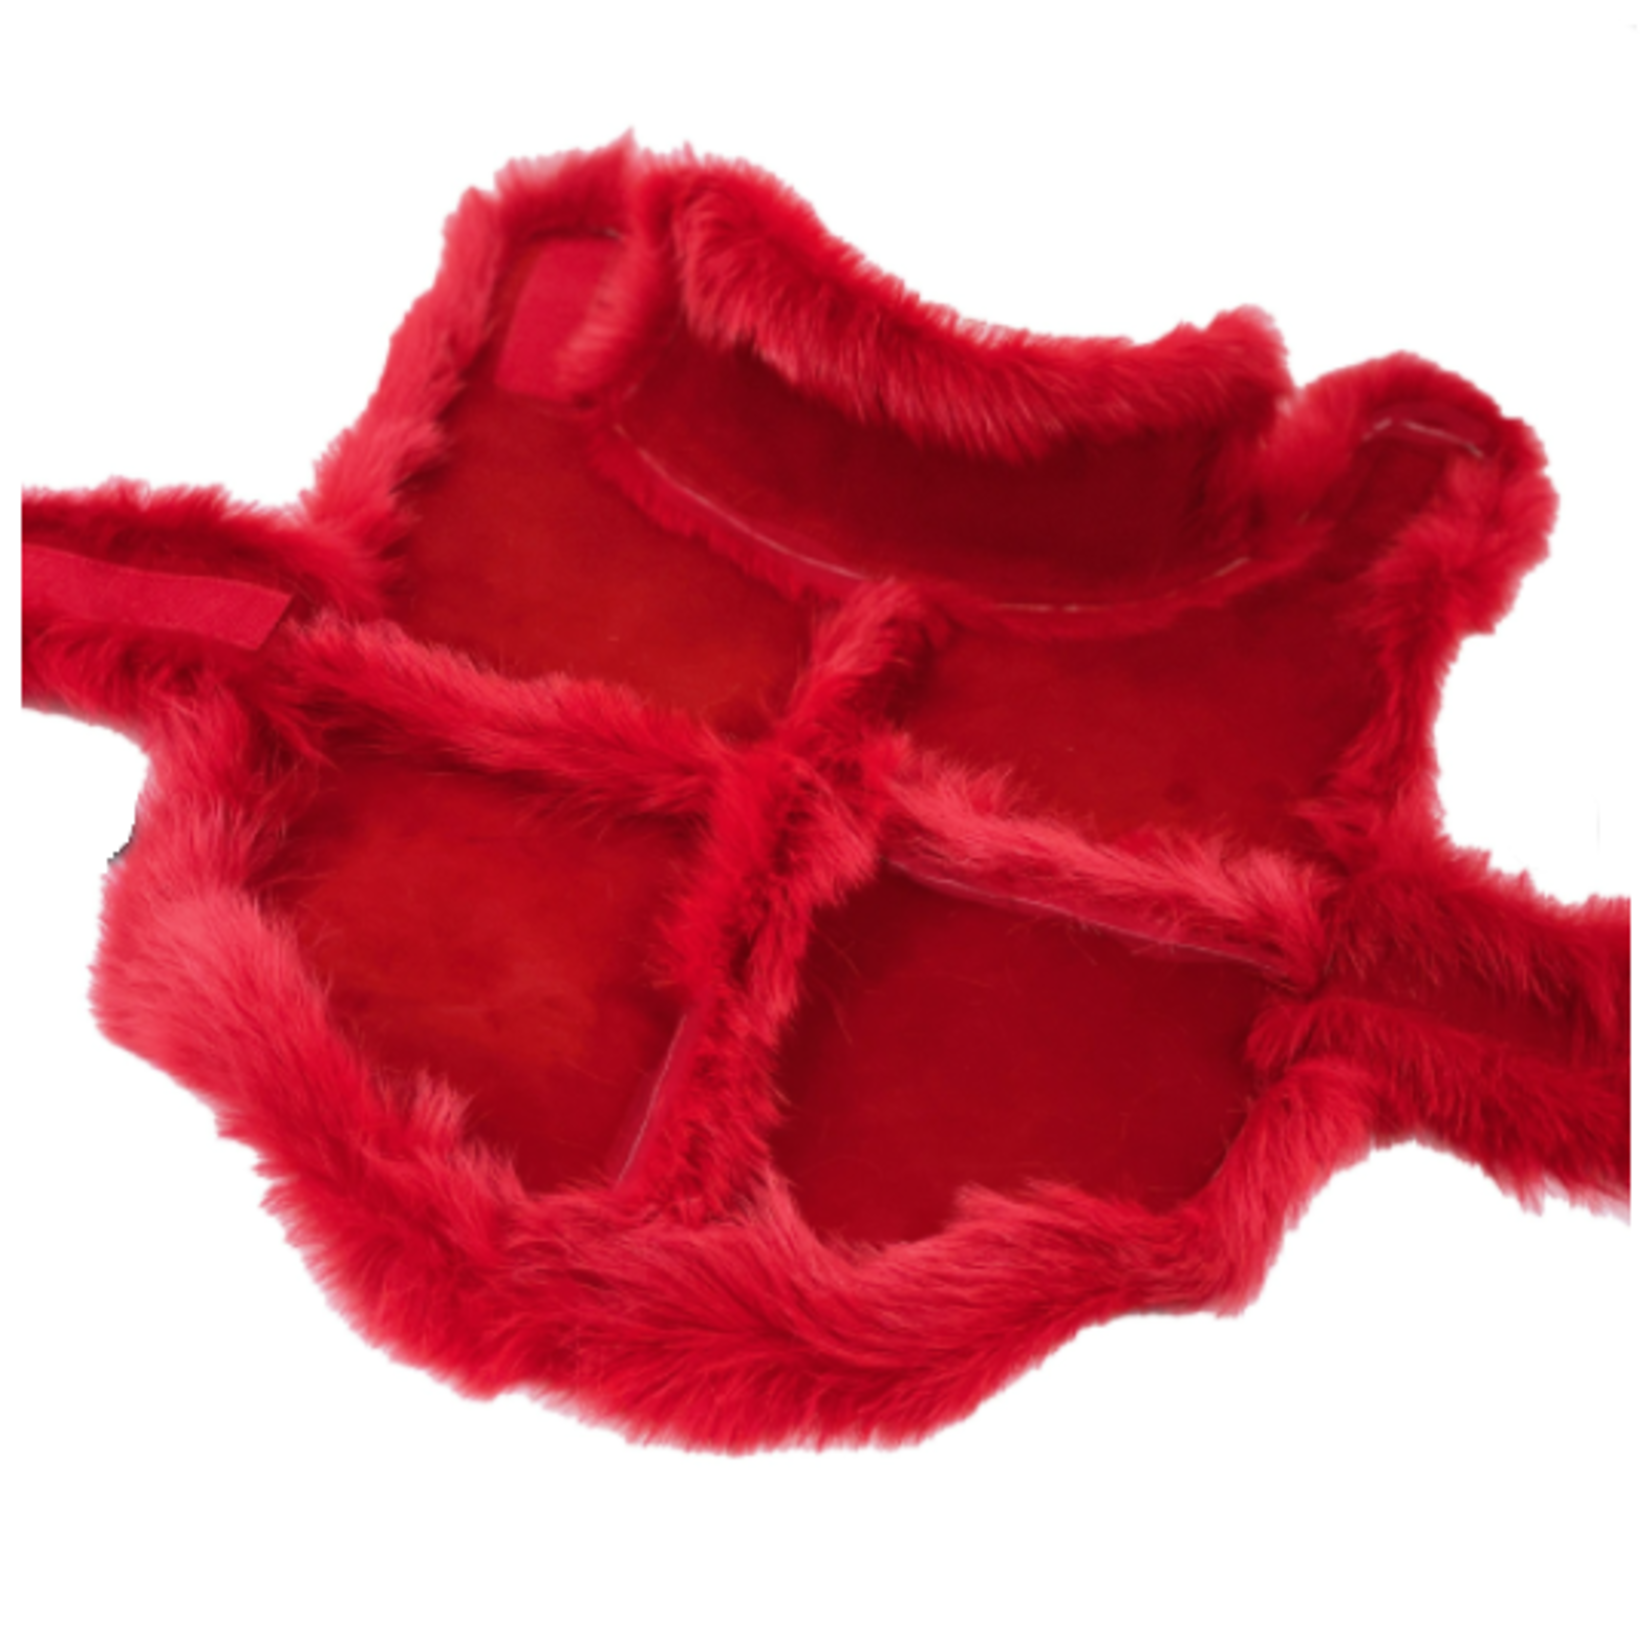 Hartman & Rose Manteau rouge à poils long en peau de mouton - XSmall